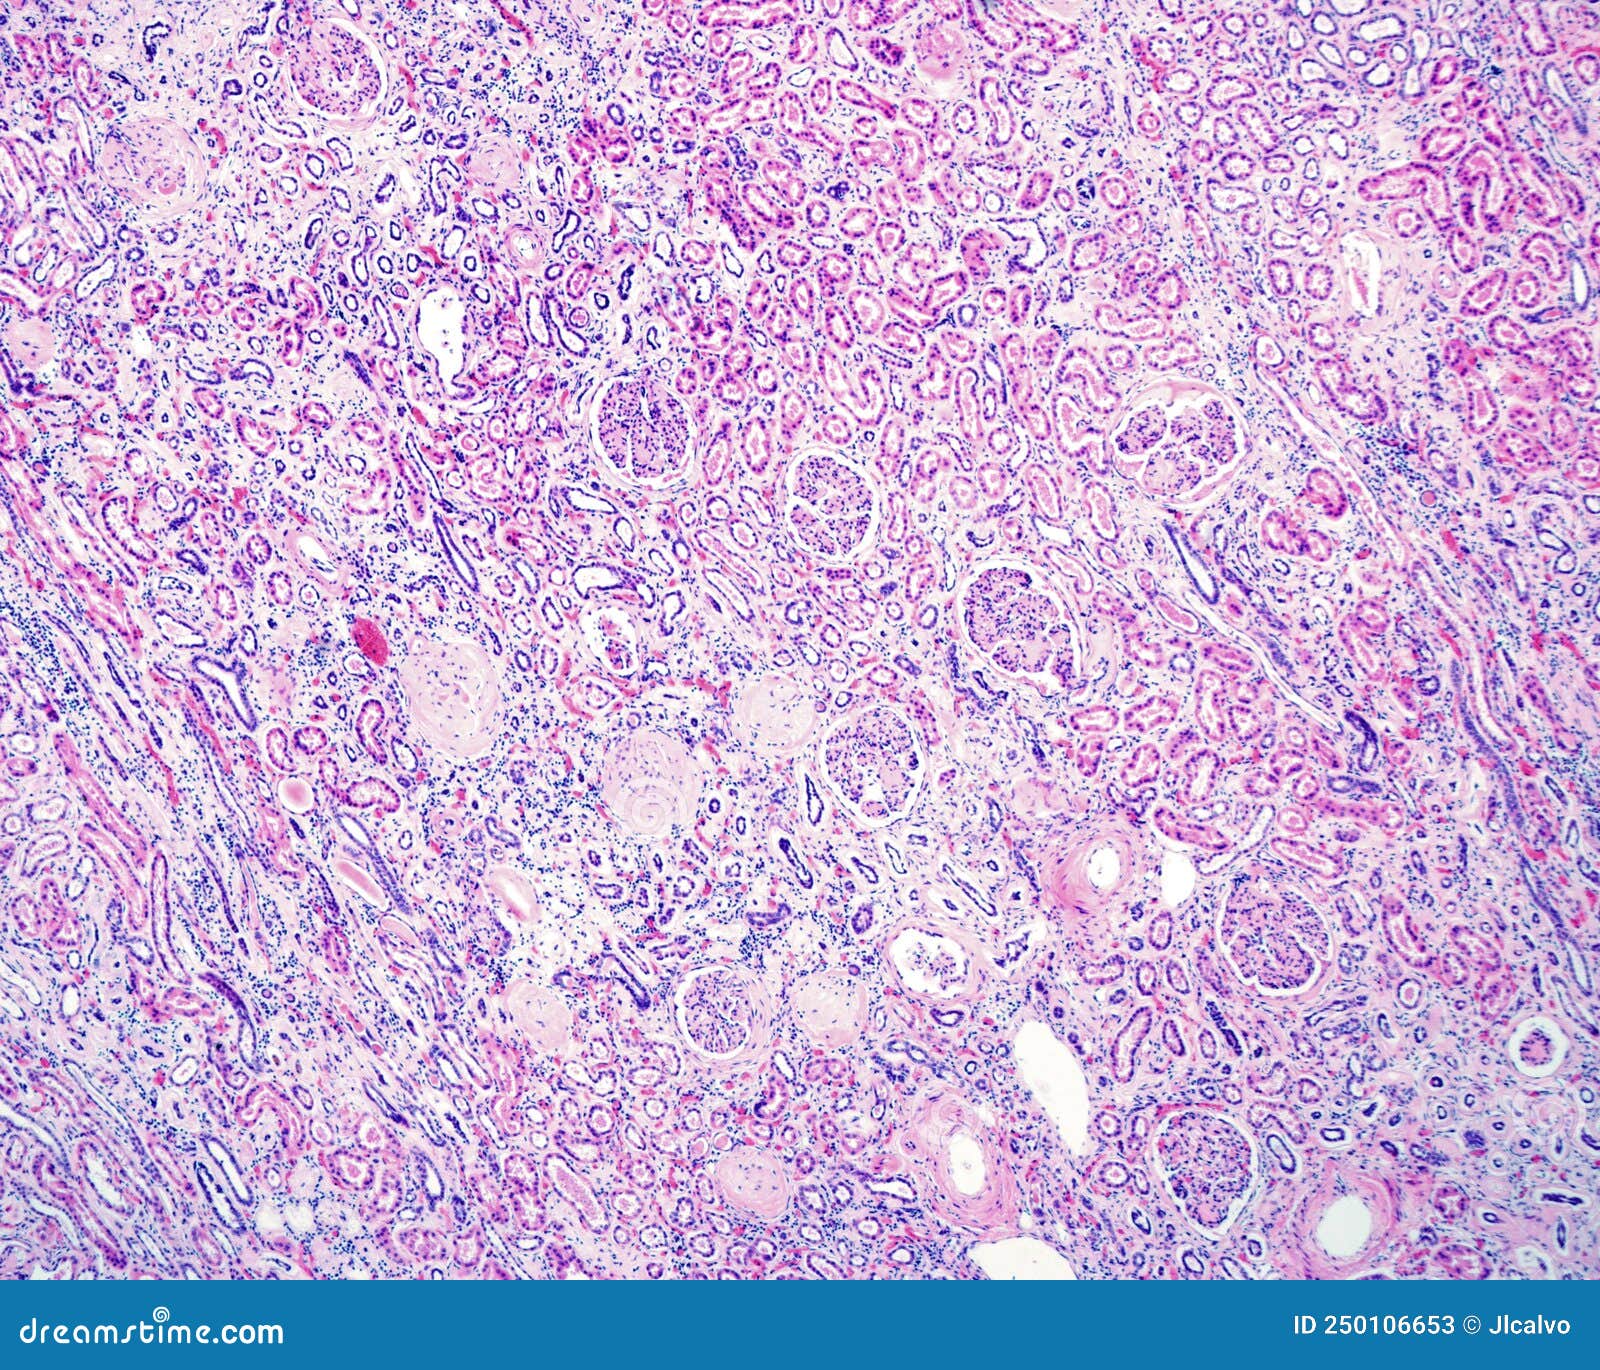 Human Kidney. Diabetic Nephropathy Stock Image - Image of renal ...